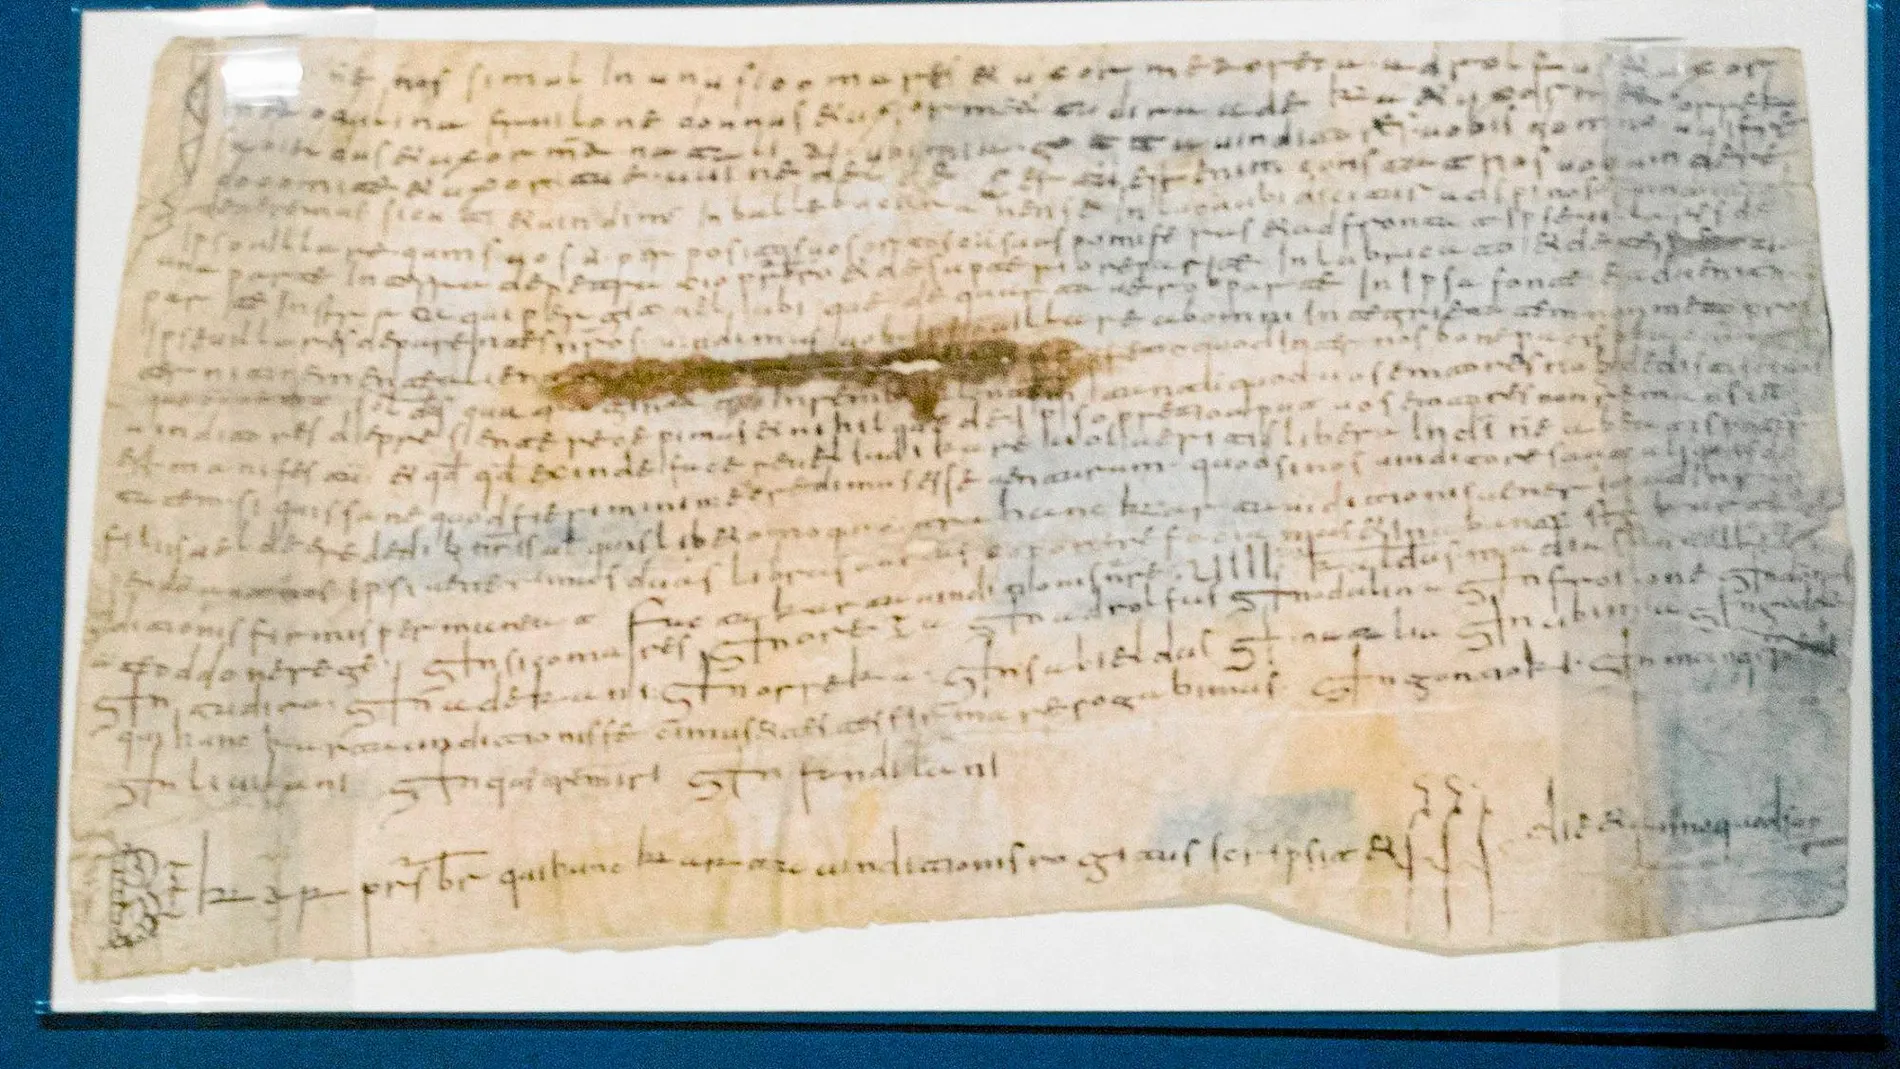 El documento más antiguo conservado en los fondos del Archivo de la Corona de Aragón, referido a la venta de un campo al conde Wilfredo y que está fechado el 24 de abril de 889